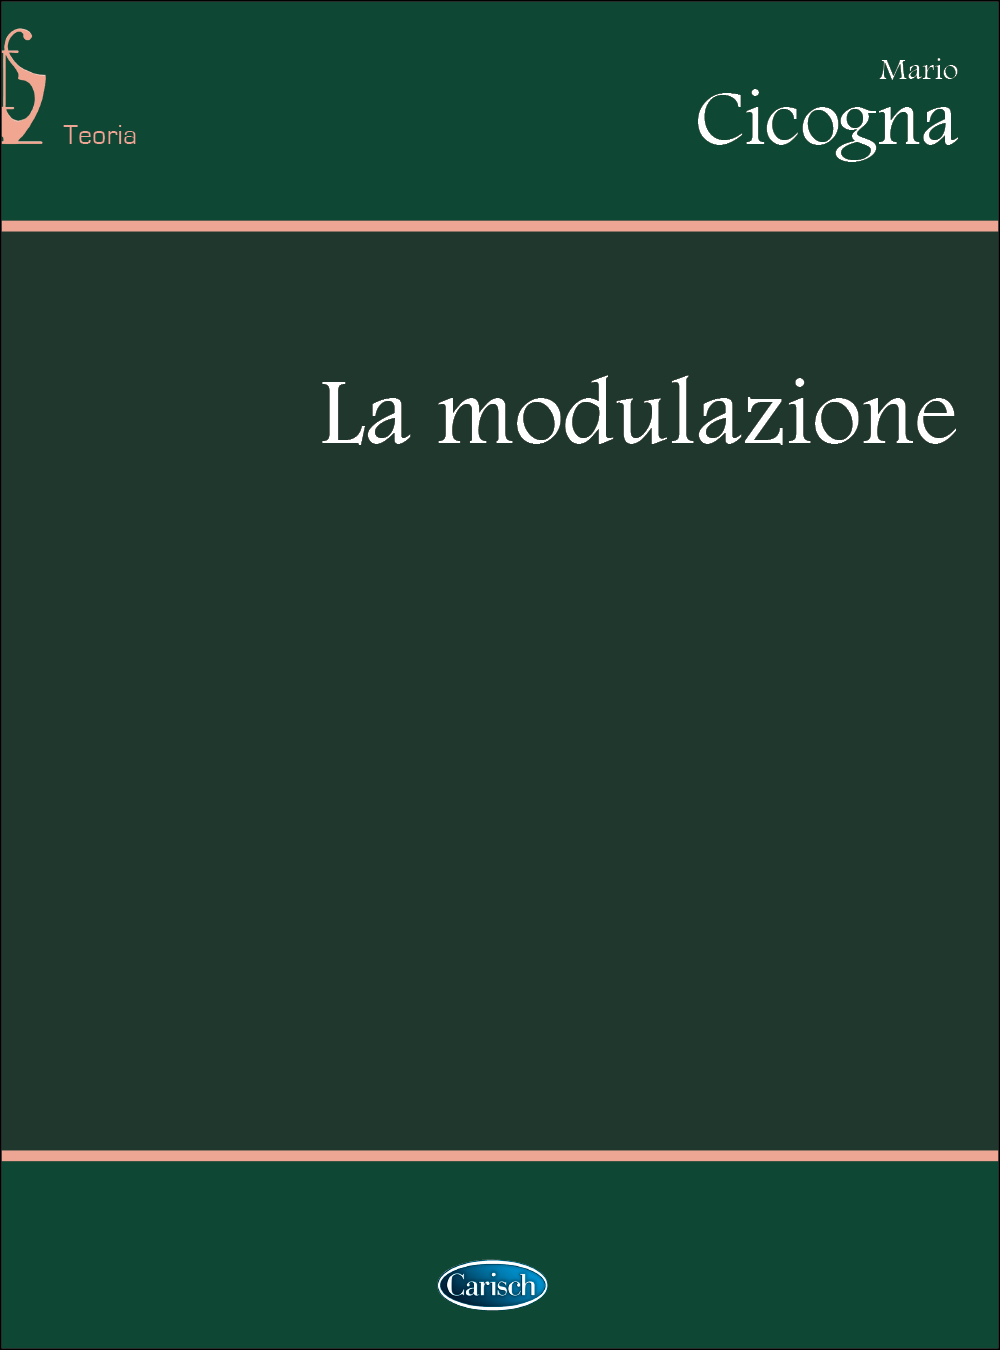 Mario Cicogna: La Modulazione: Theory